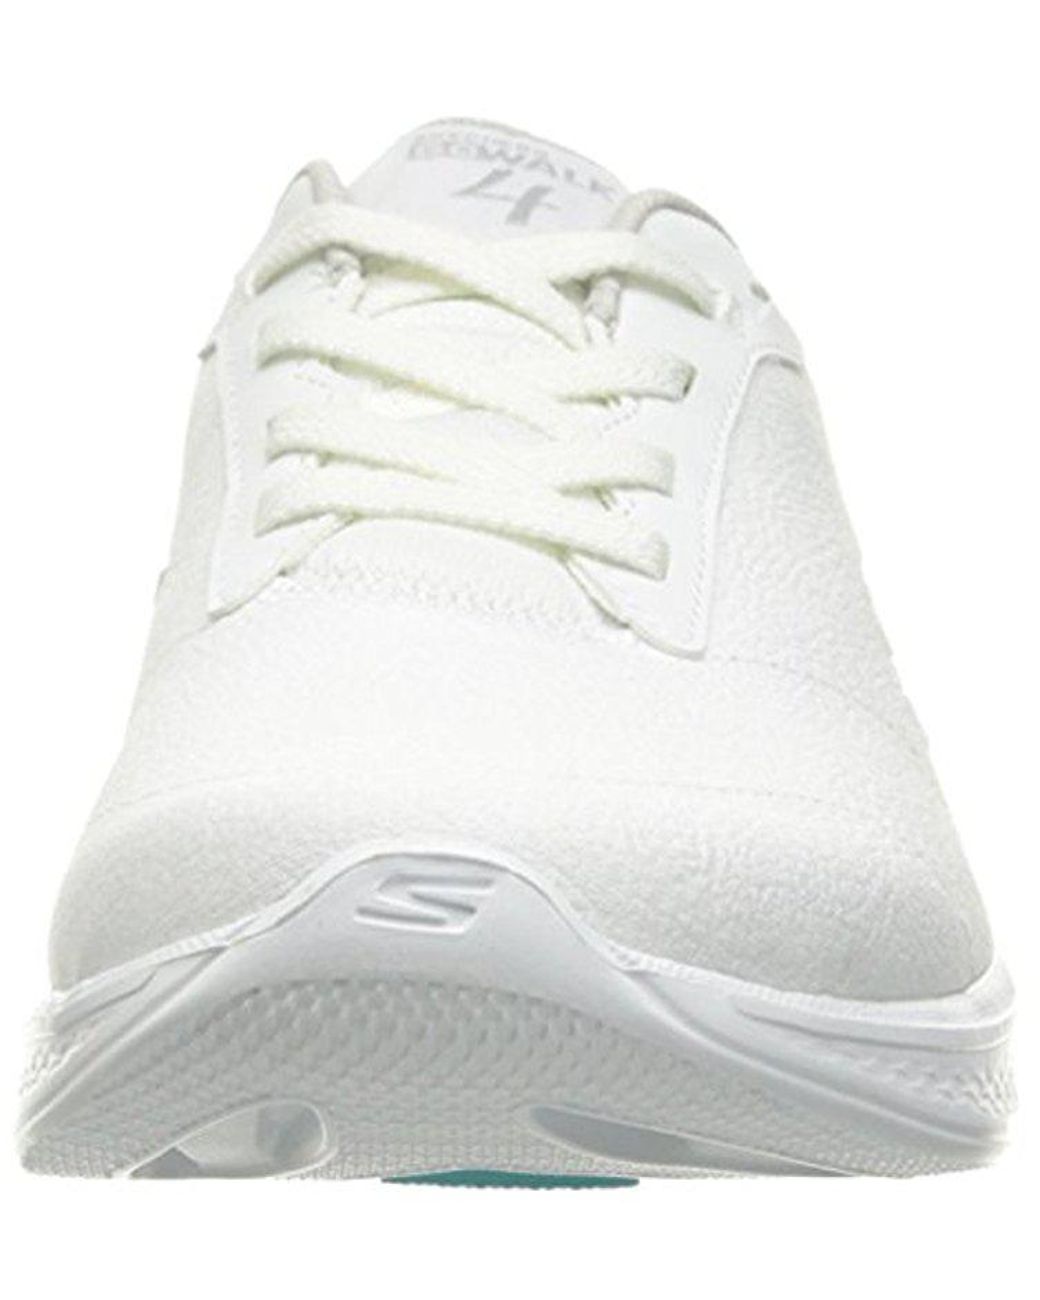 Convergeren Raap Bezighouden Skechers Performance Go Walk 4 Premier Walking Shoe in White | Lyst